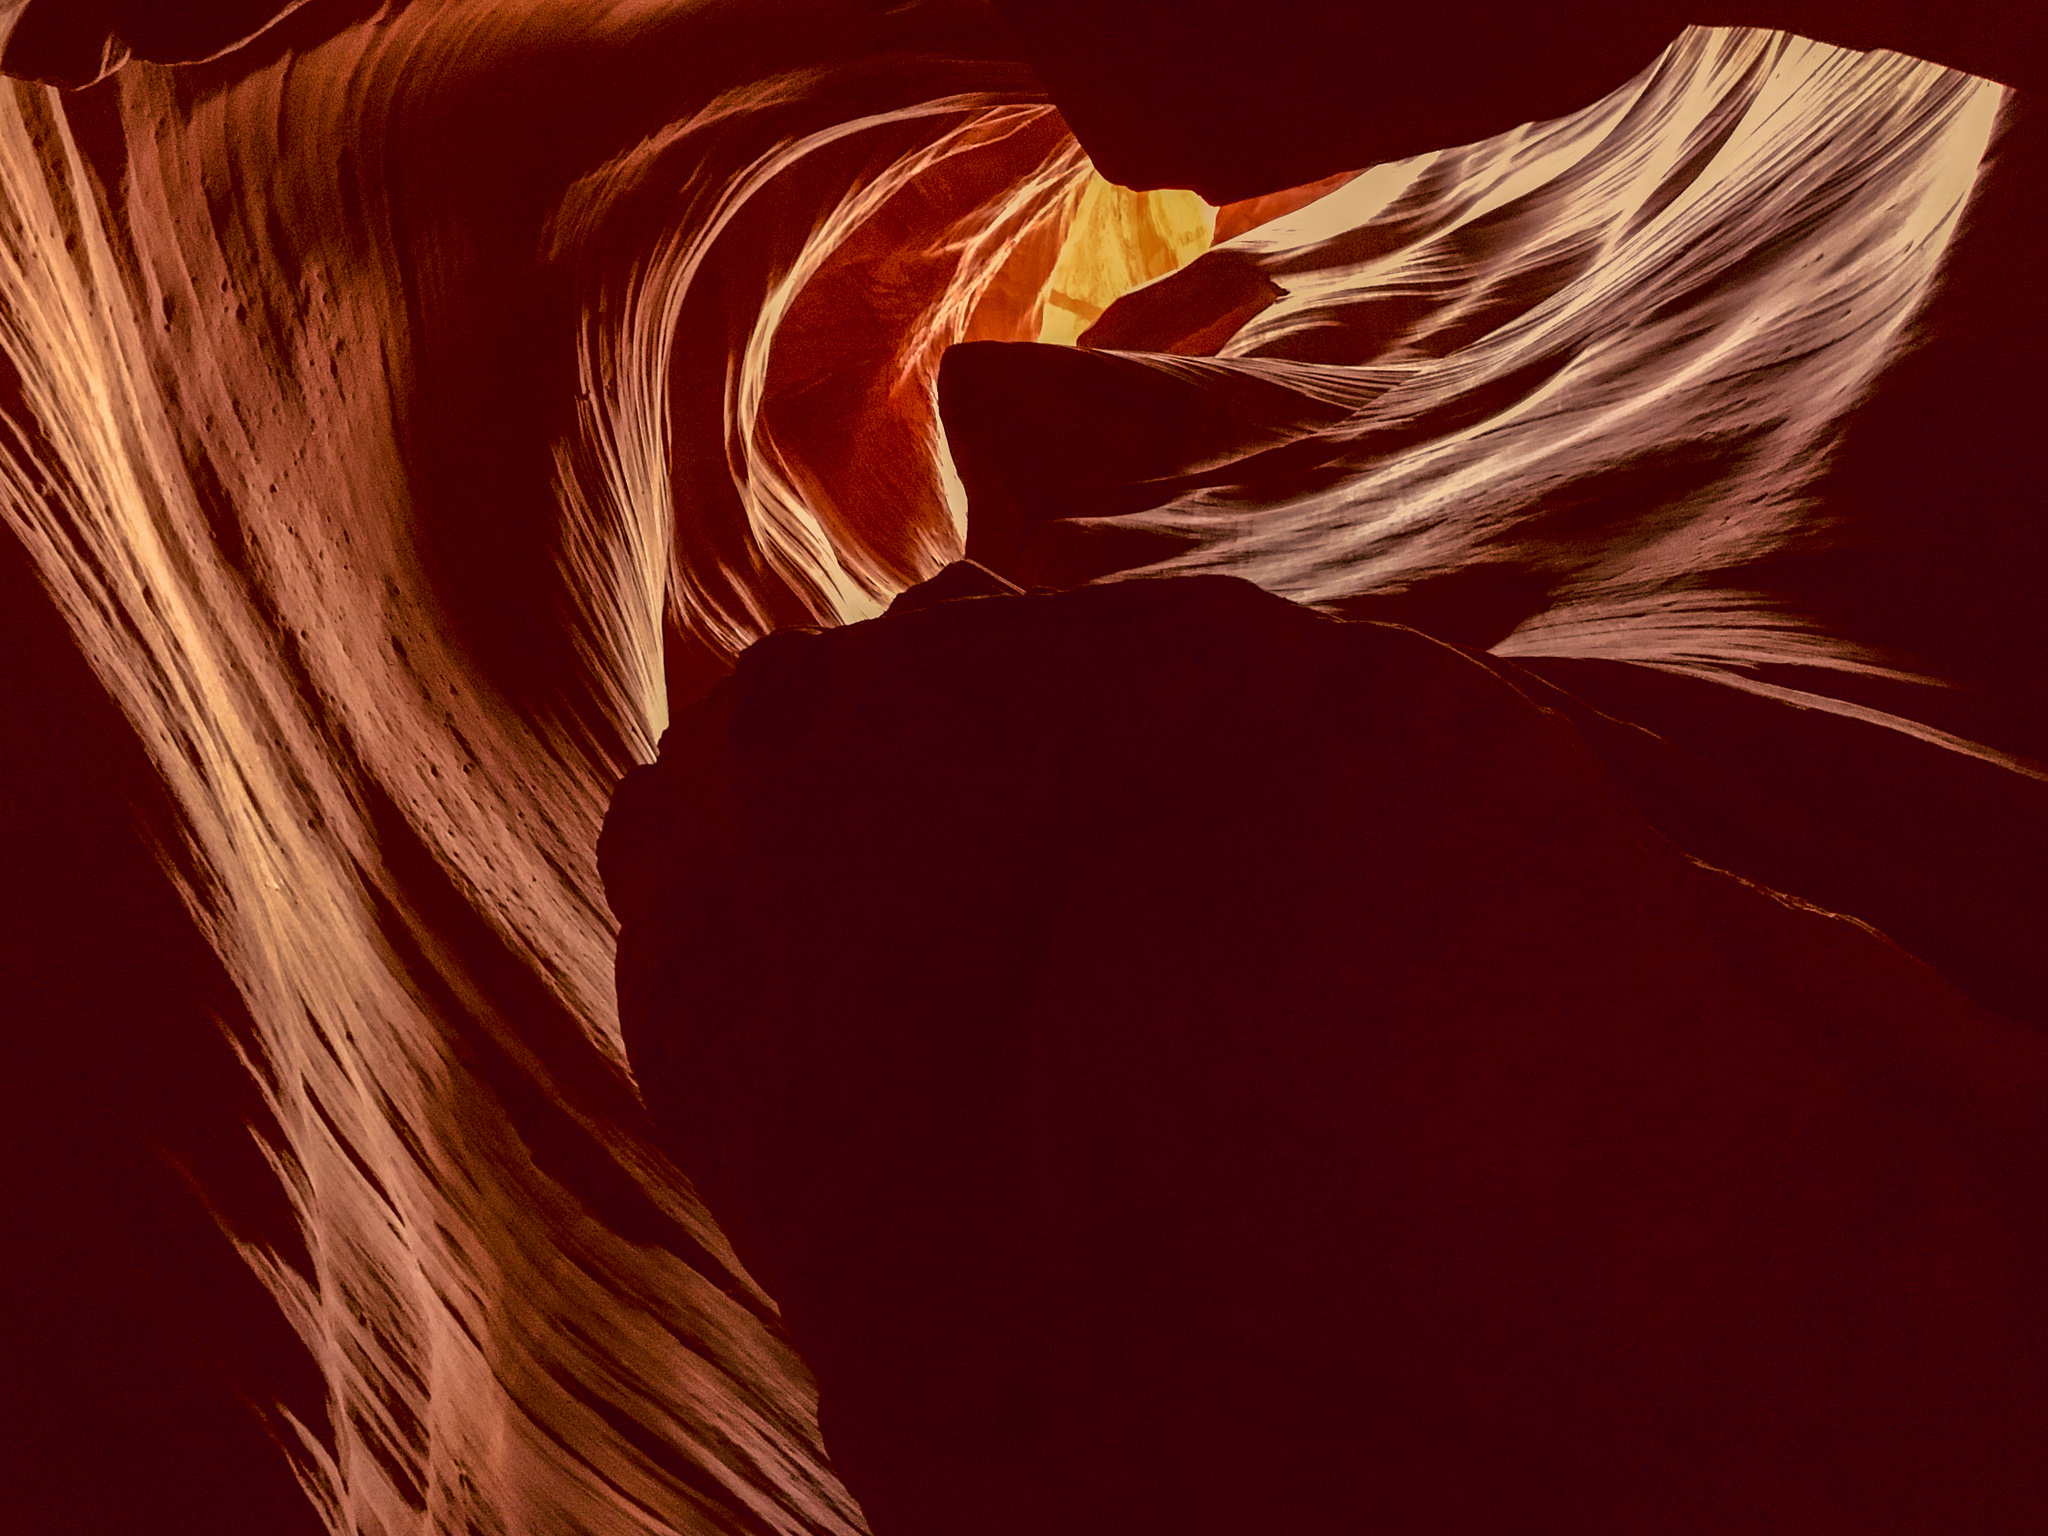 Visitare l'Antelope Canyon: tutte le informazioni utili